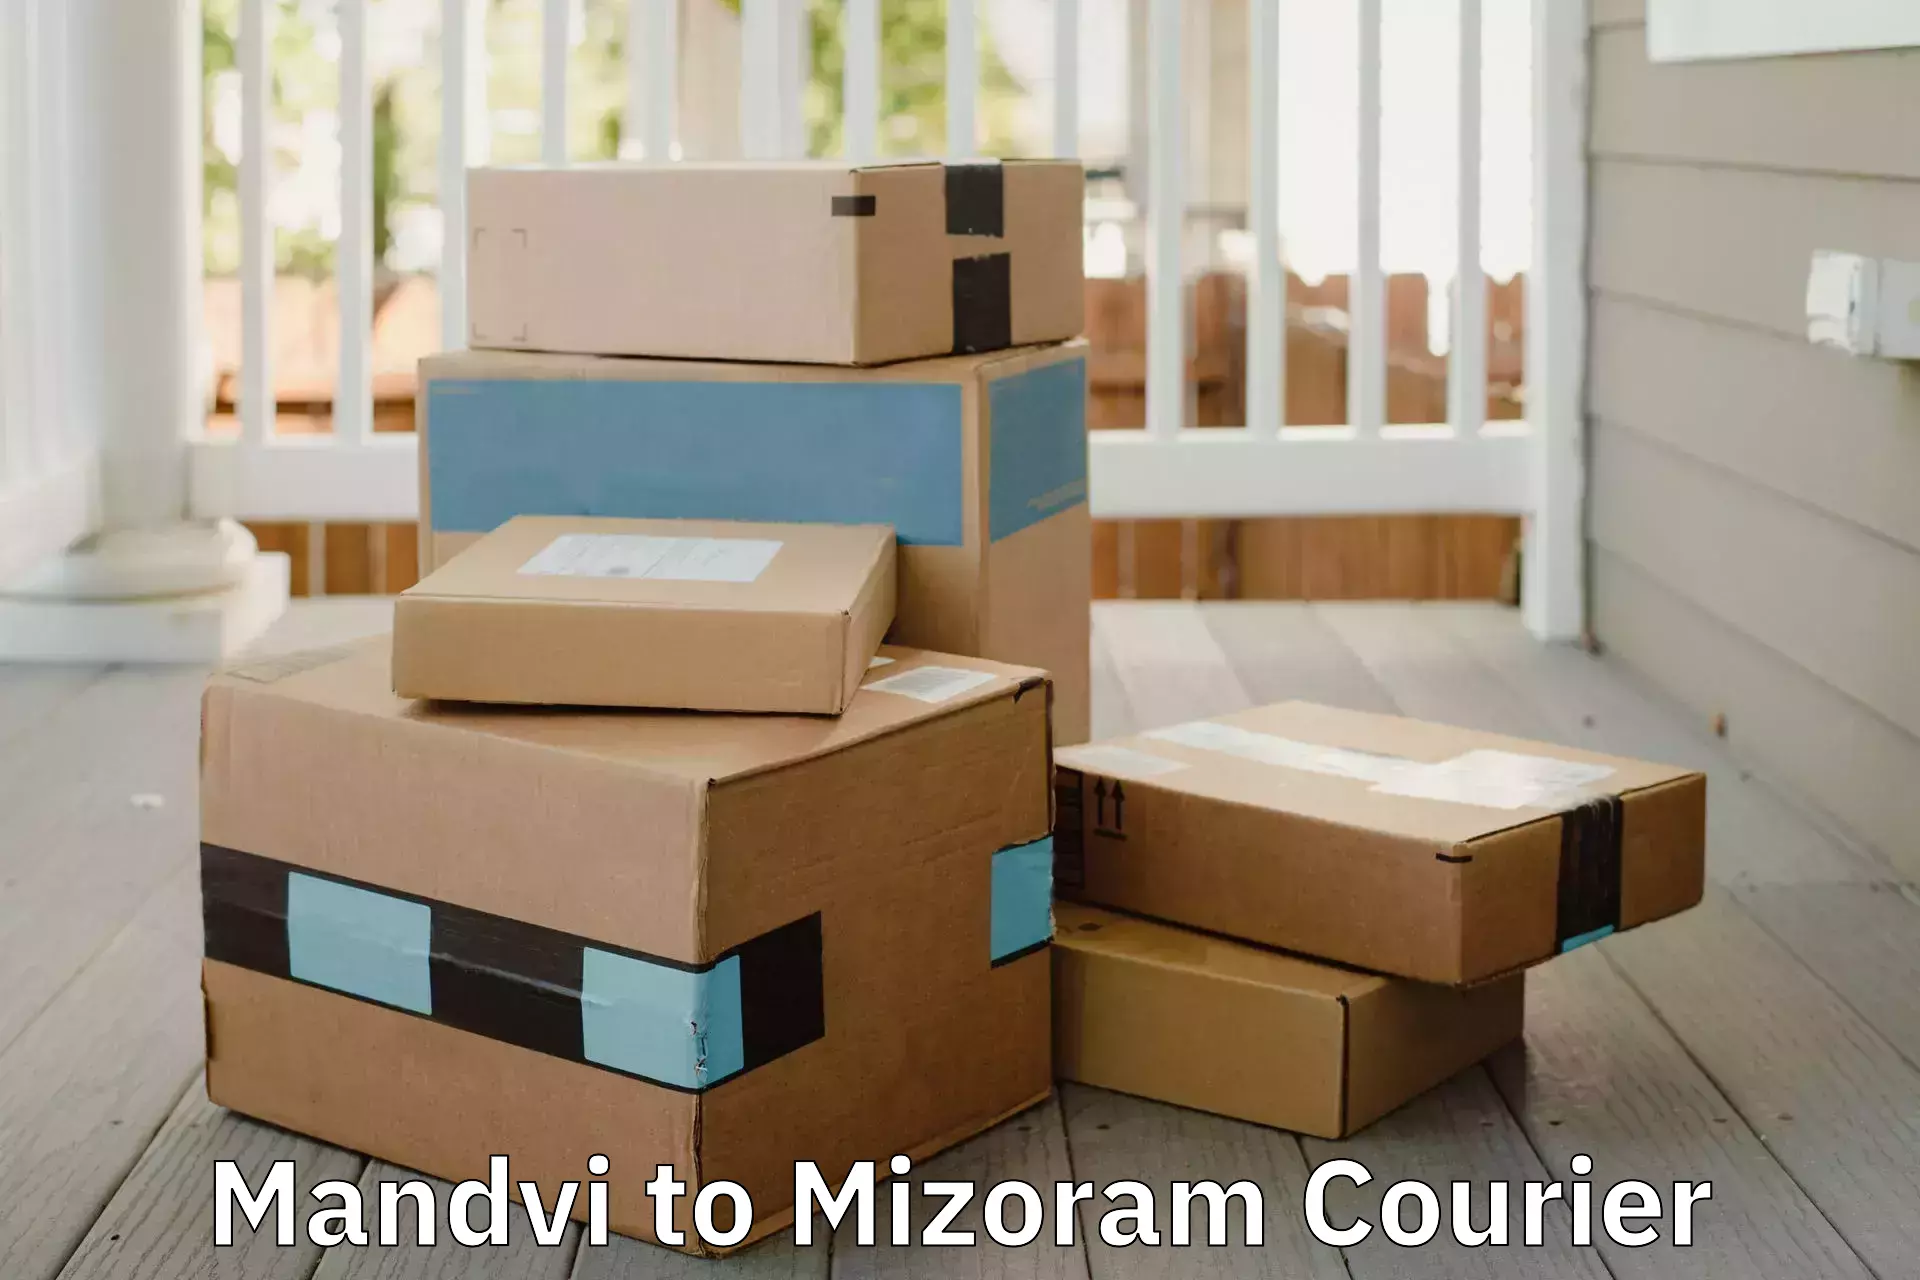 Full-service relocation Mandvi to Mizoram